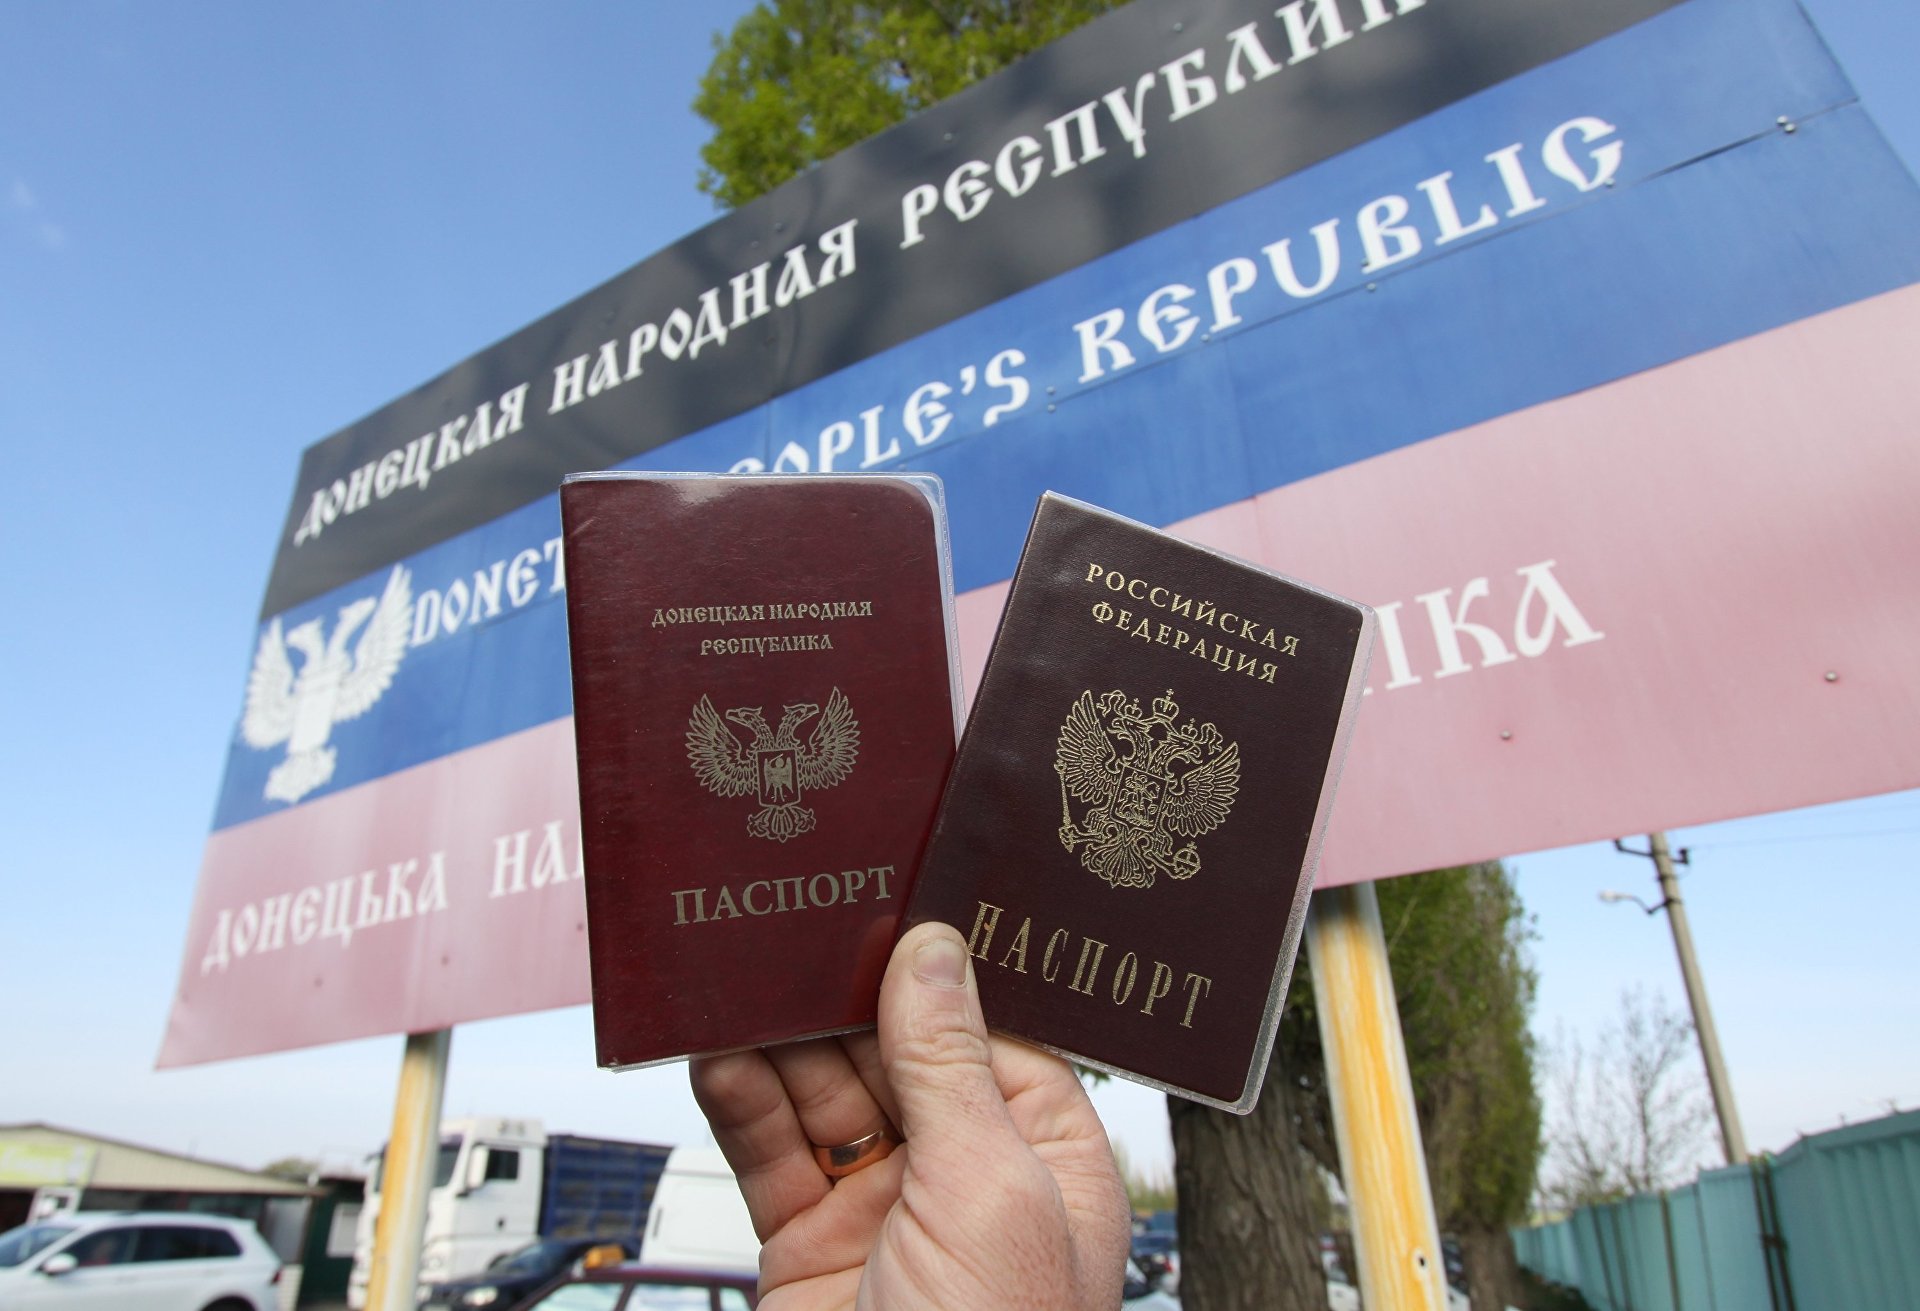 "Сценария лучше просто не существует", - украинский политолог Суворов о выдаче российских паспортов в ОРДЛО